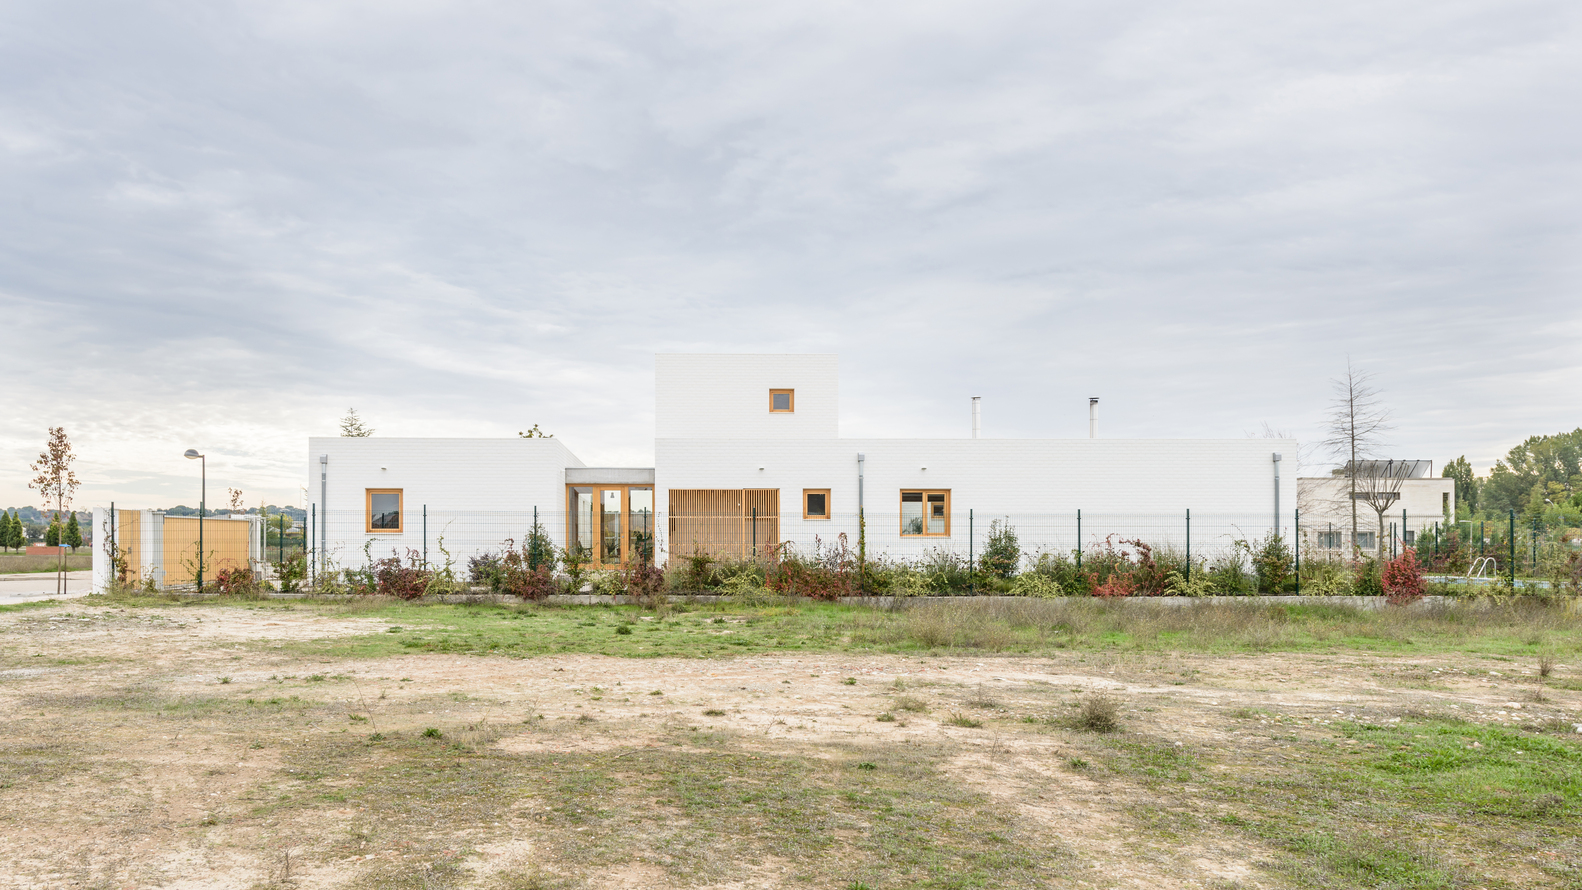 Hình ảnh toàn cảnh nhà 2 tầng tọa lạc trong một khu dân cư ở Laguna de Duero, gần thành phố Valladolid, Tây Ban Nha